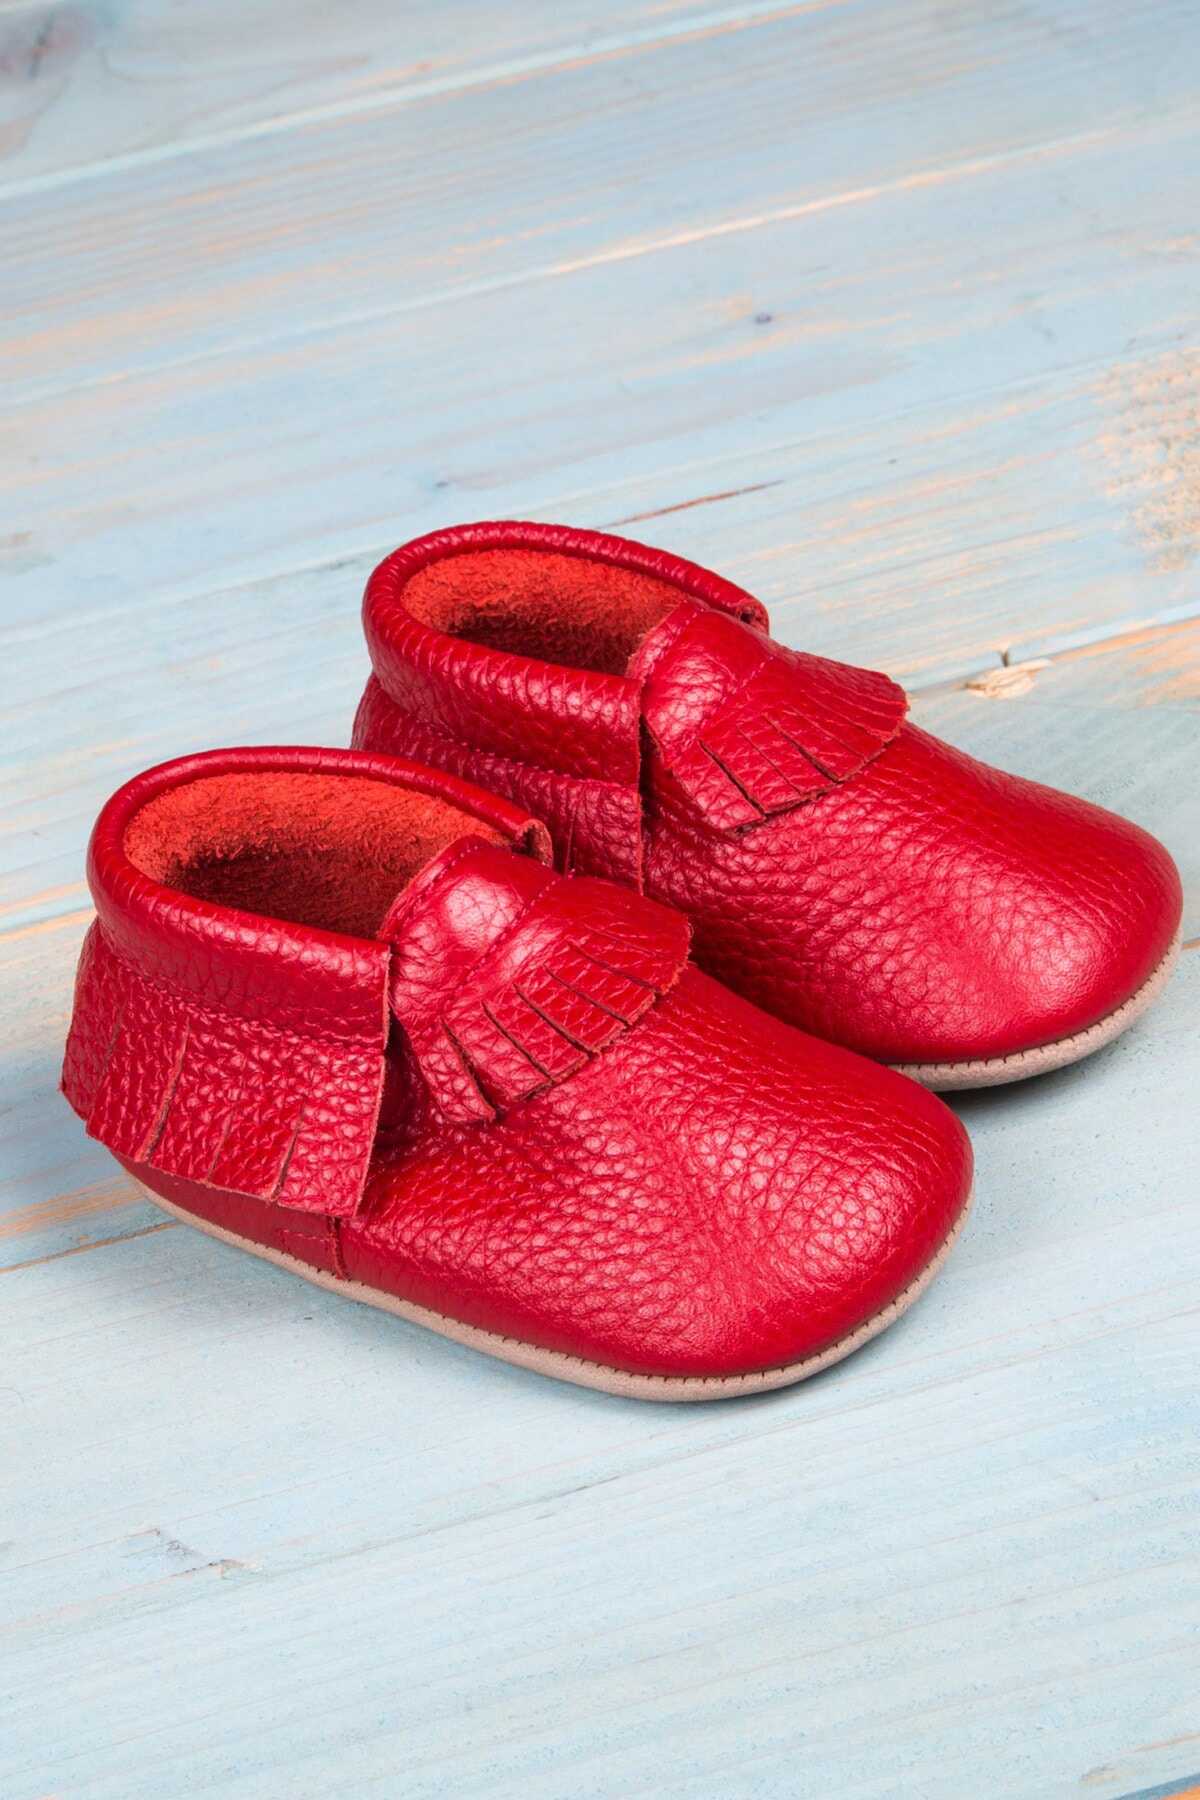 کفش راحتی مدل سرخپوستی بچه گانه یونیسکس قرمز برند Ella Bonna